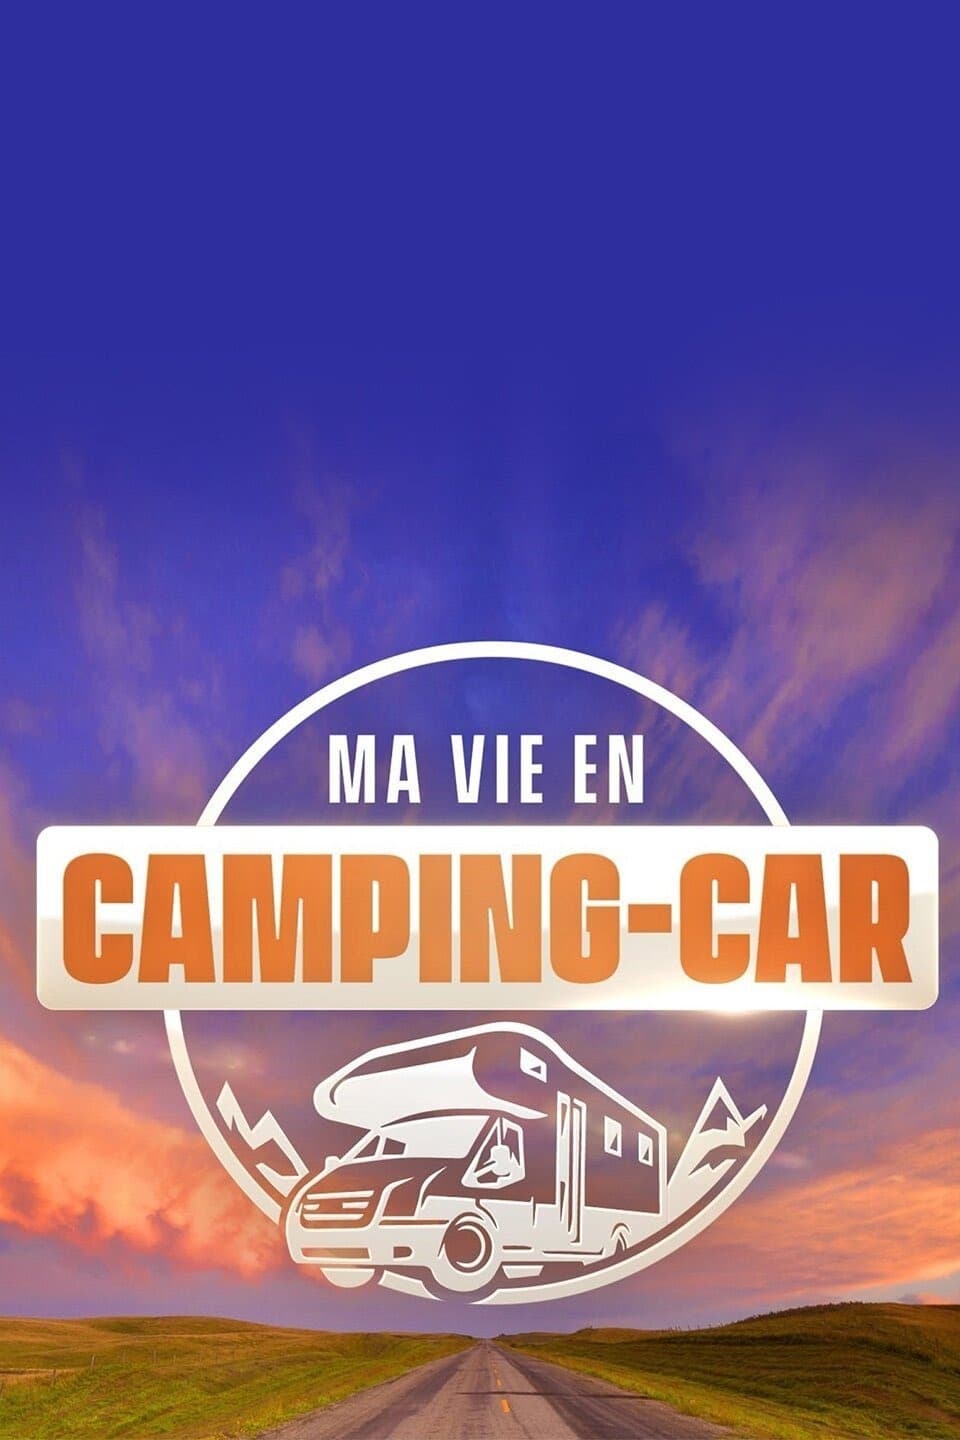 Ma vie en camping-car